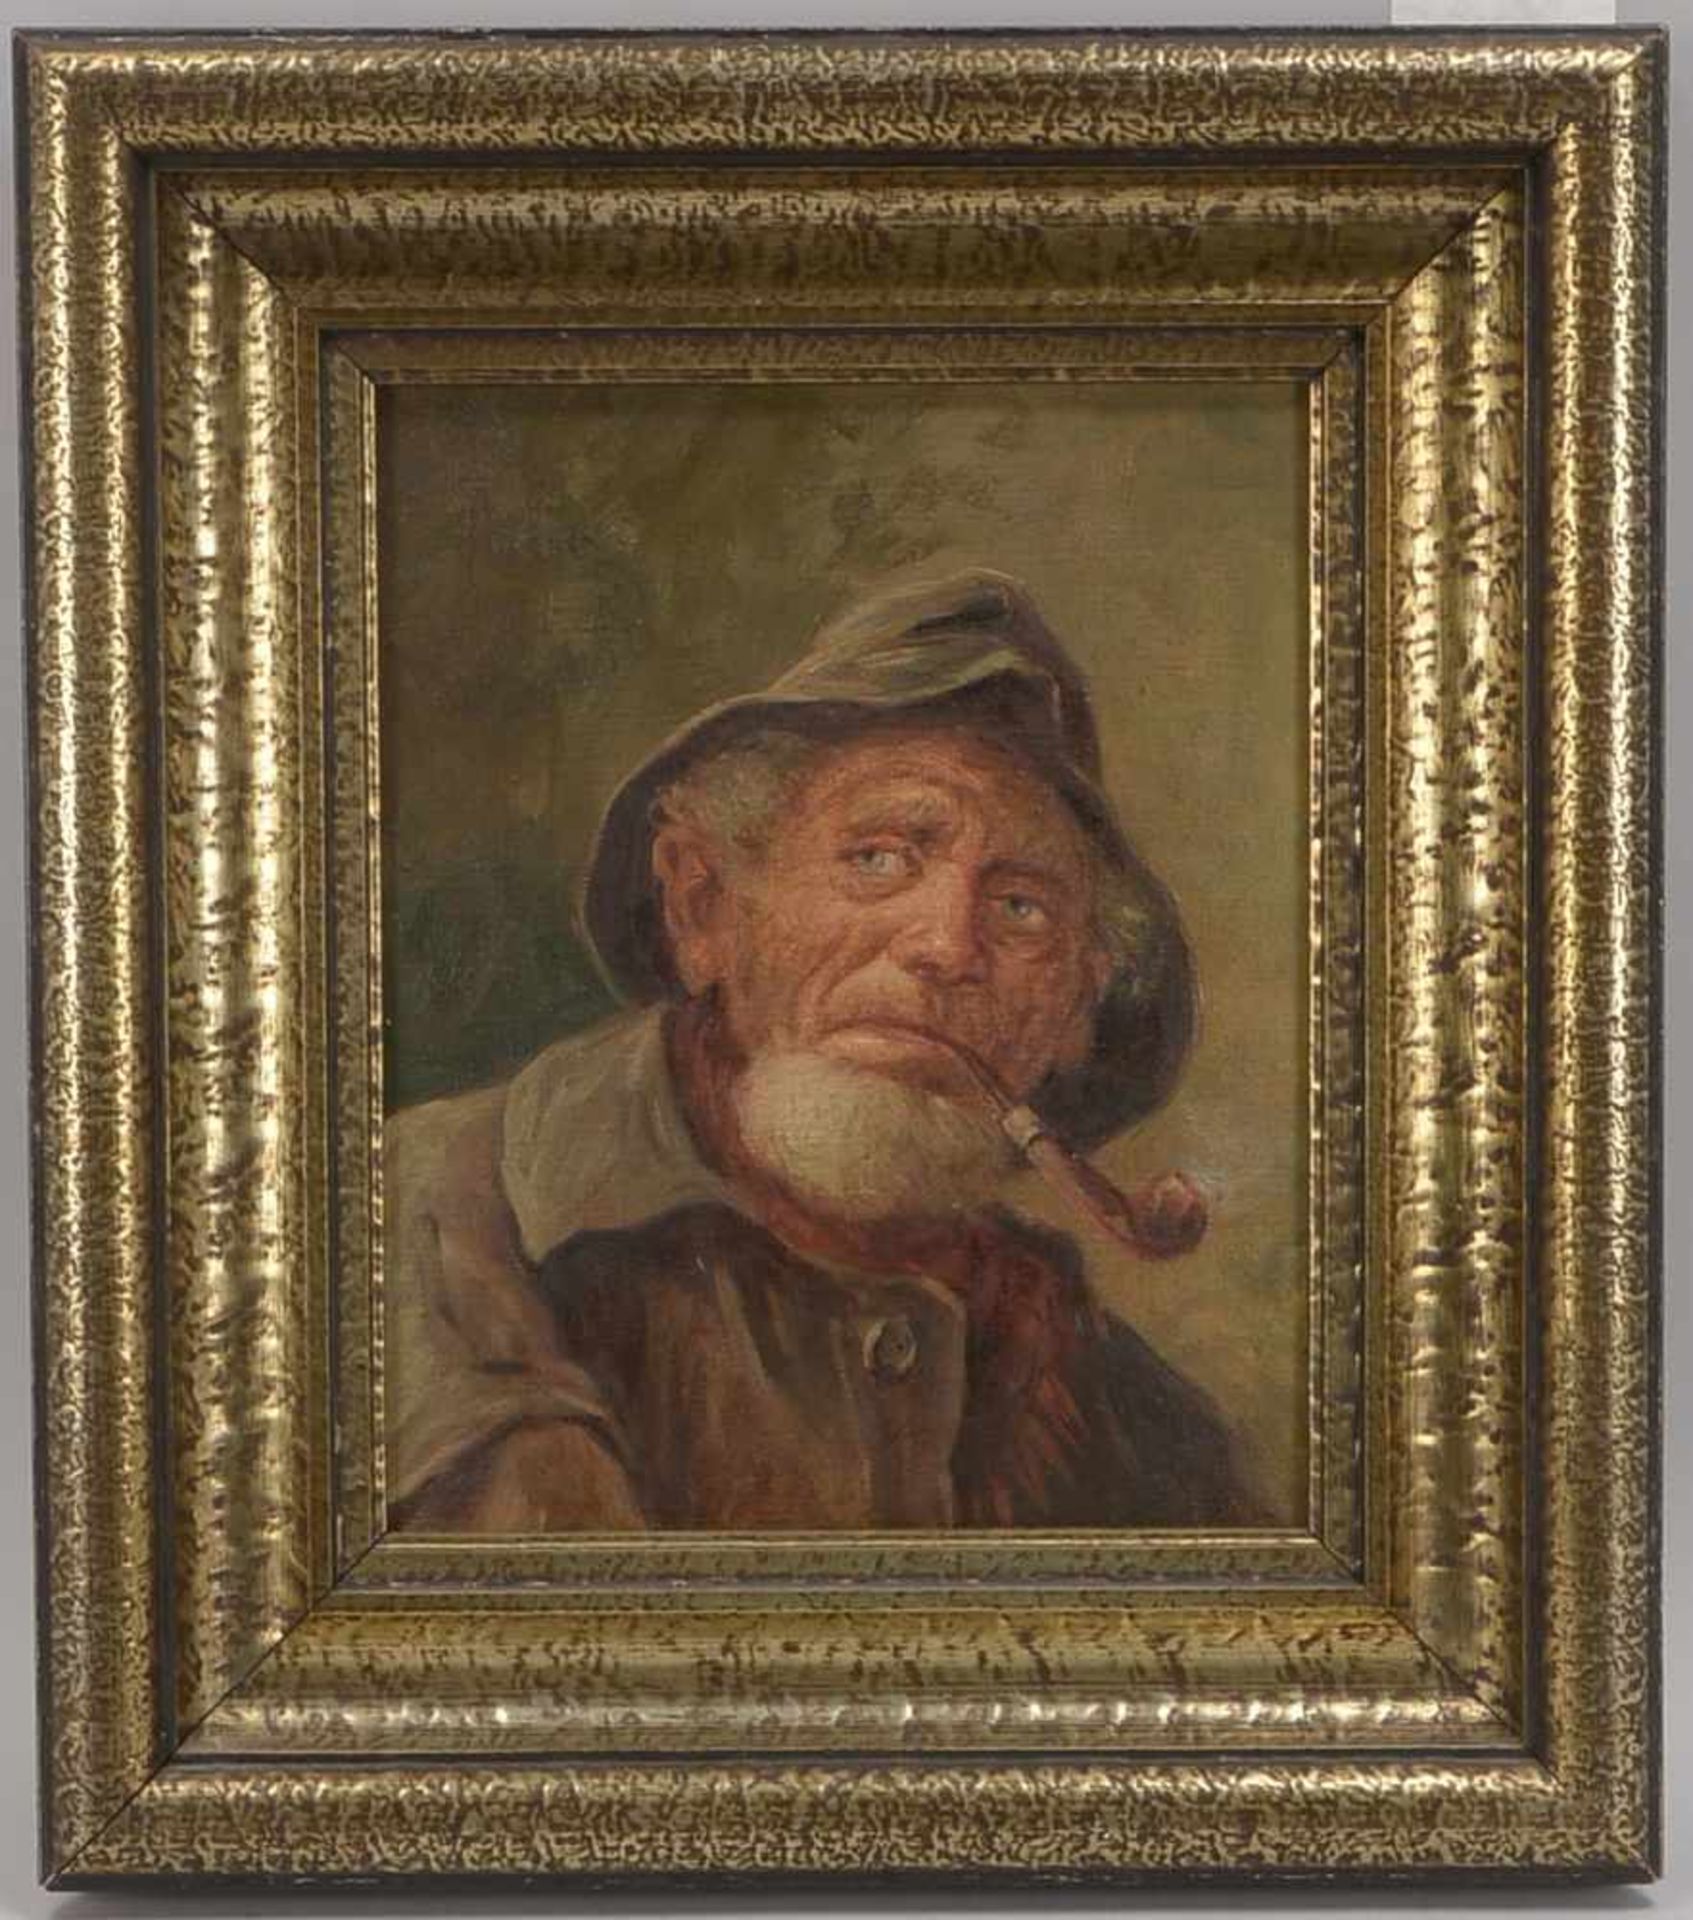 Stübner, Robert Emil, 'Portrait eines Fischers' (seine Pfeife rauchend dargestellt), Öl/Lw, oben